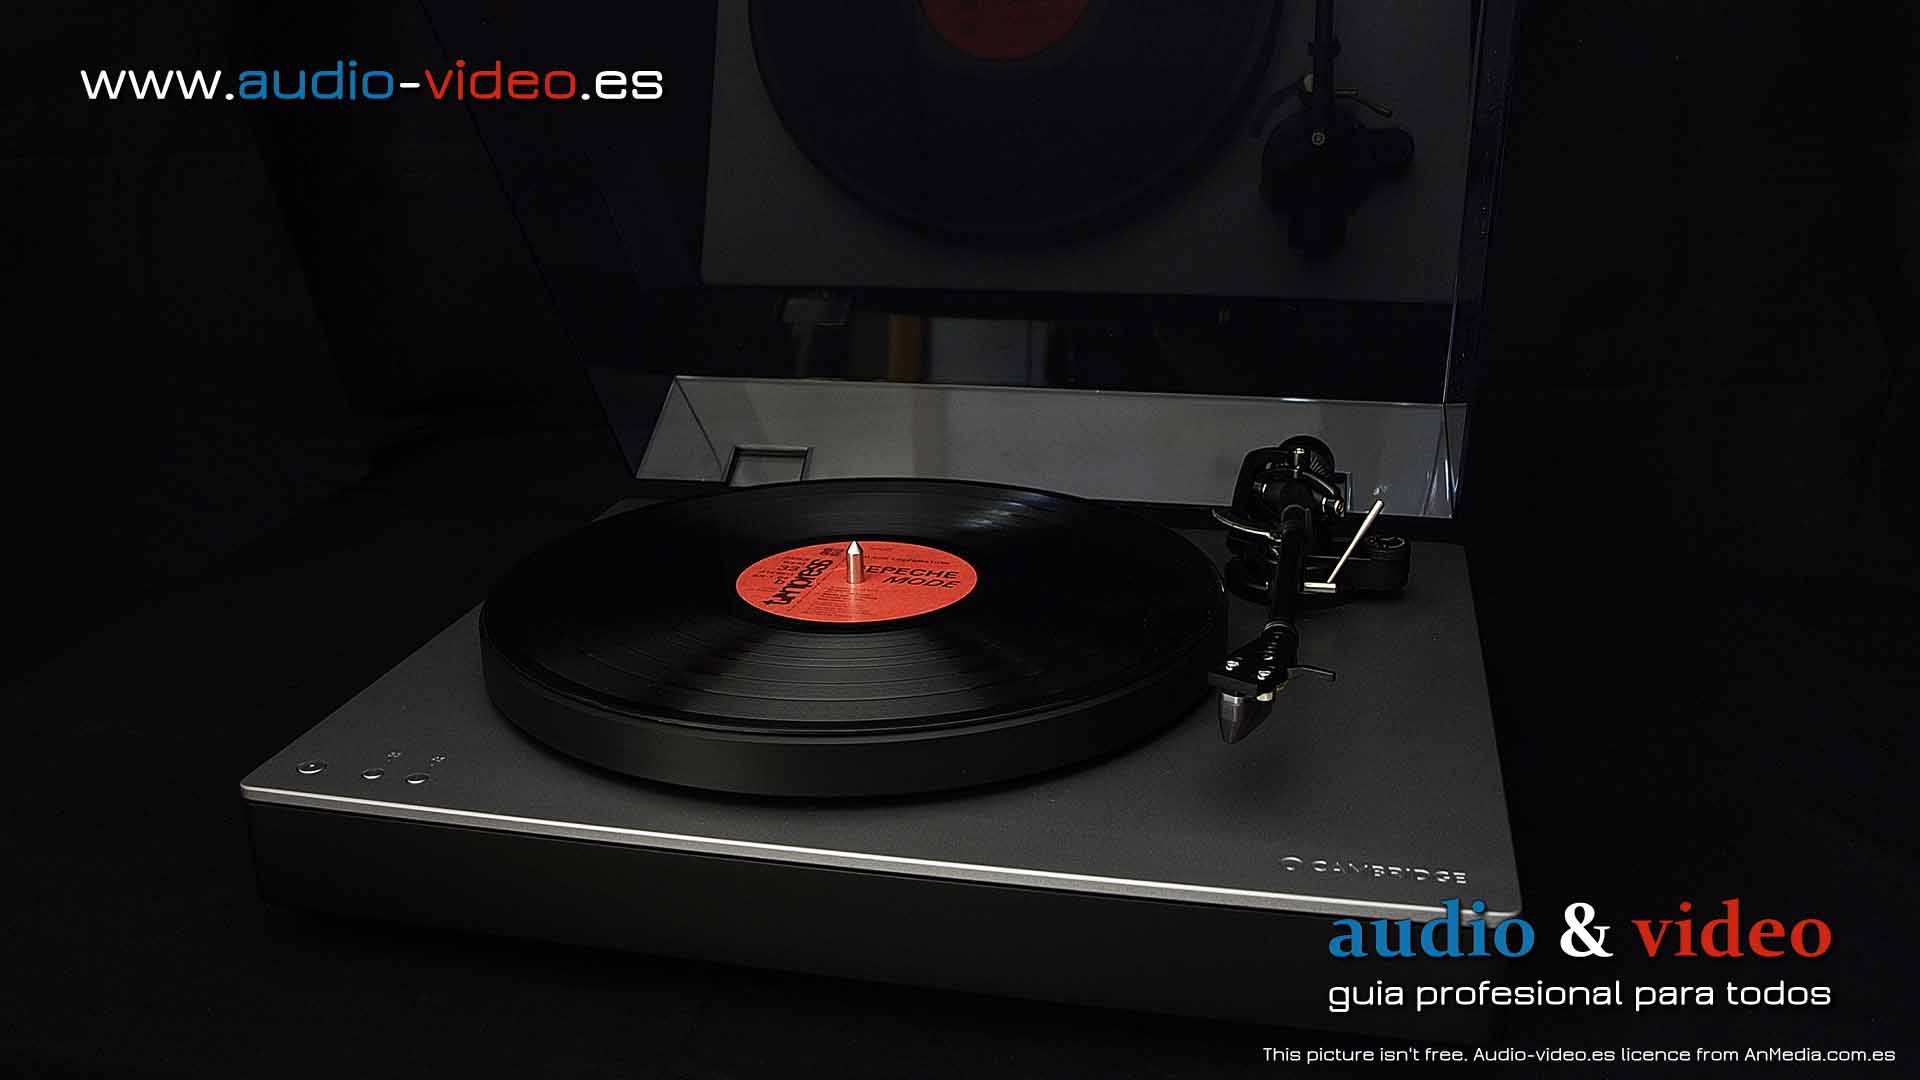 Cambridge Audio - Alva TT V2 - review - Primera impresión, el diseño del dispositivo